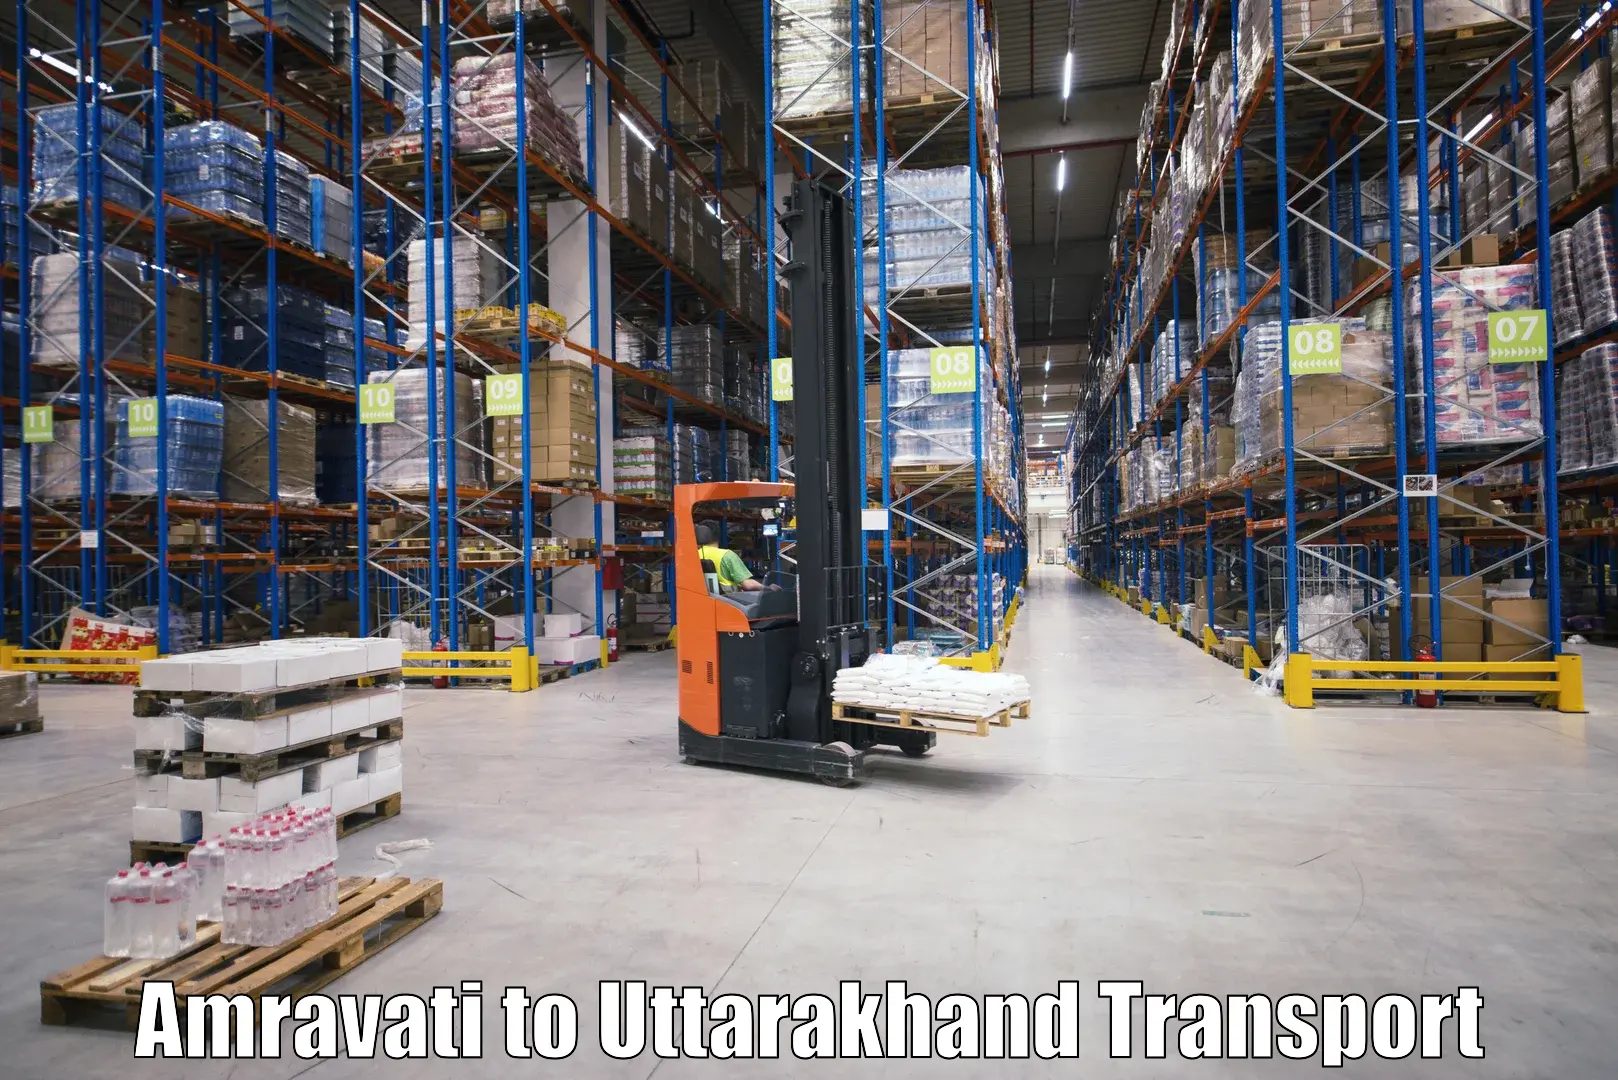 Transport in sharing in Amravati to Uttarakhand